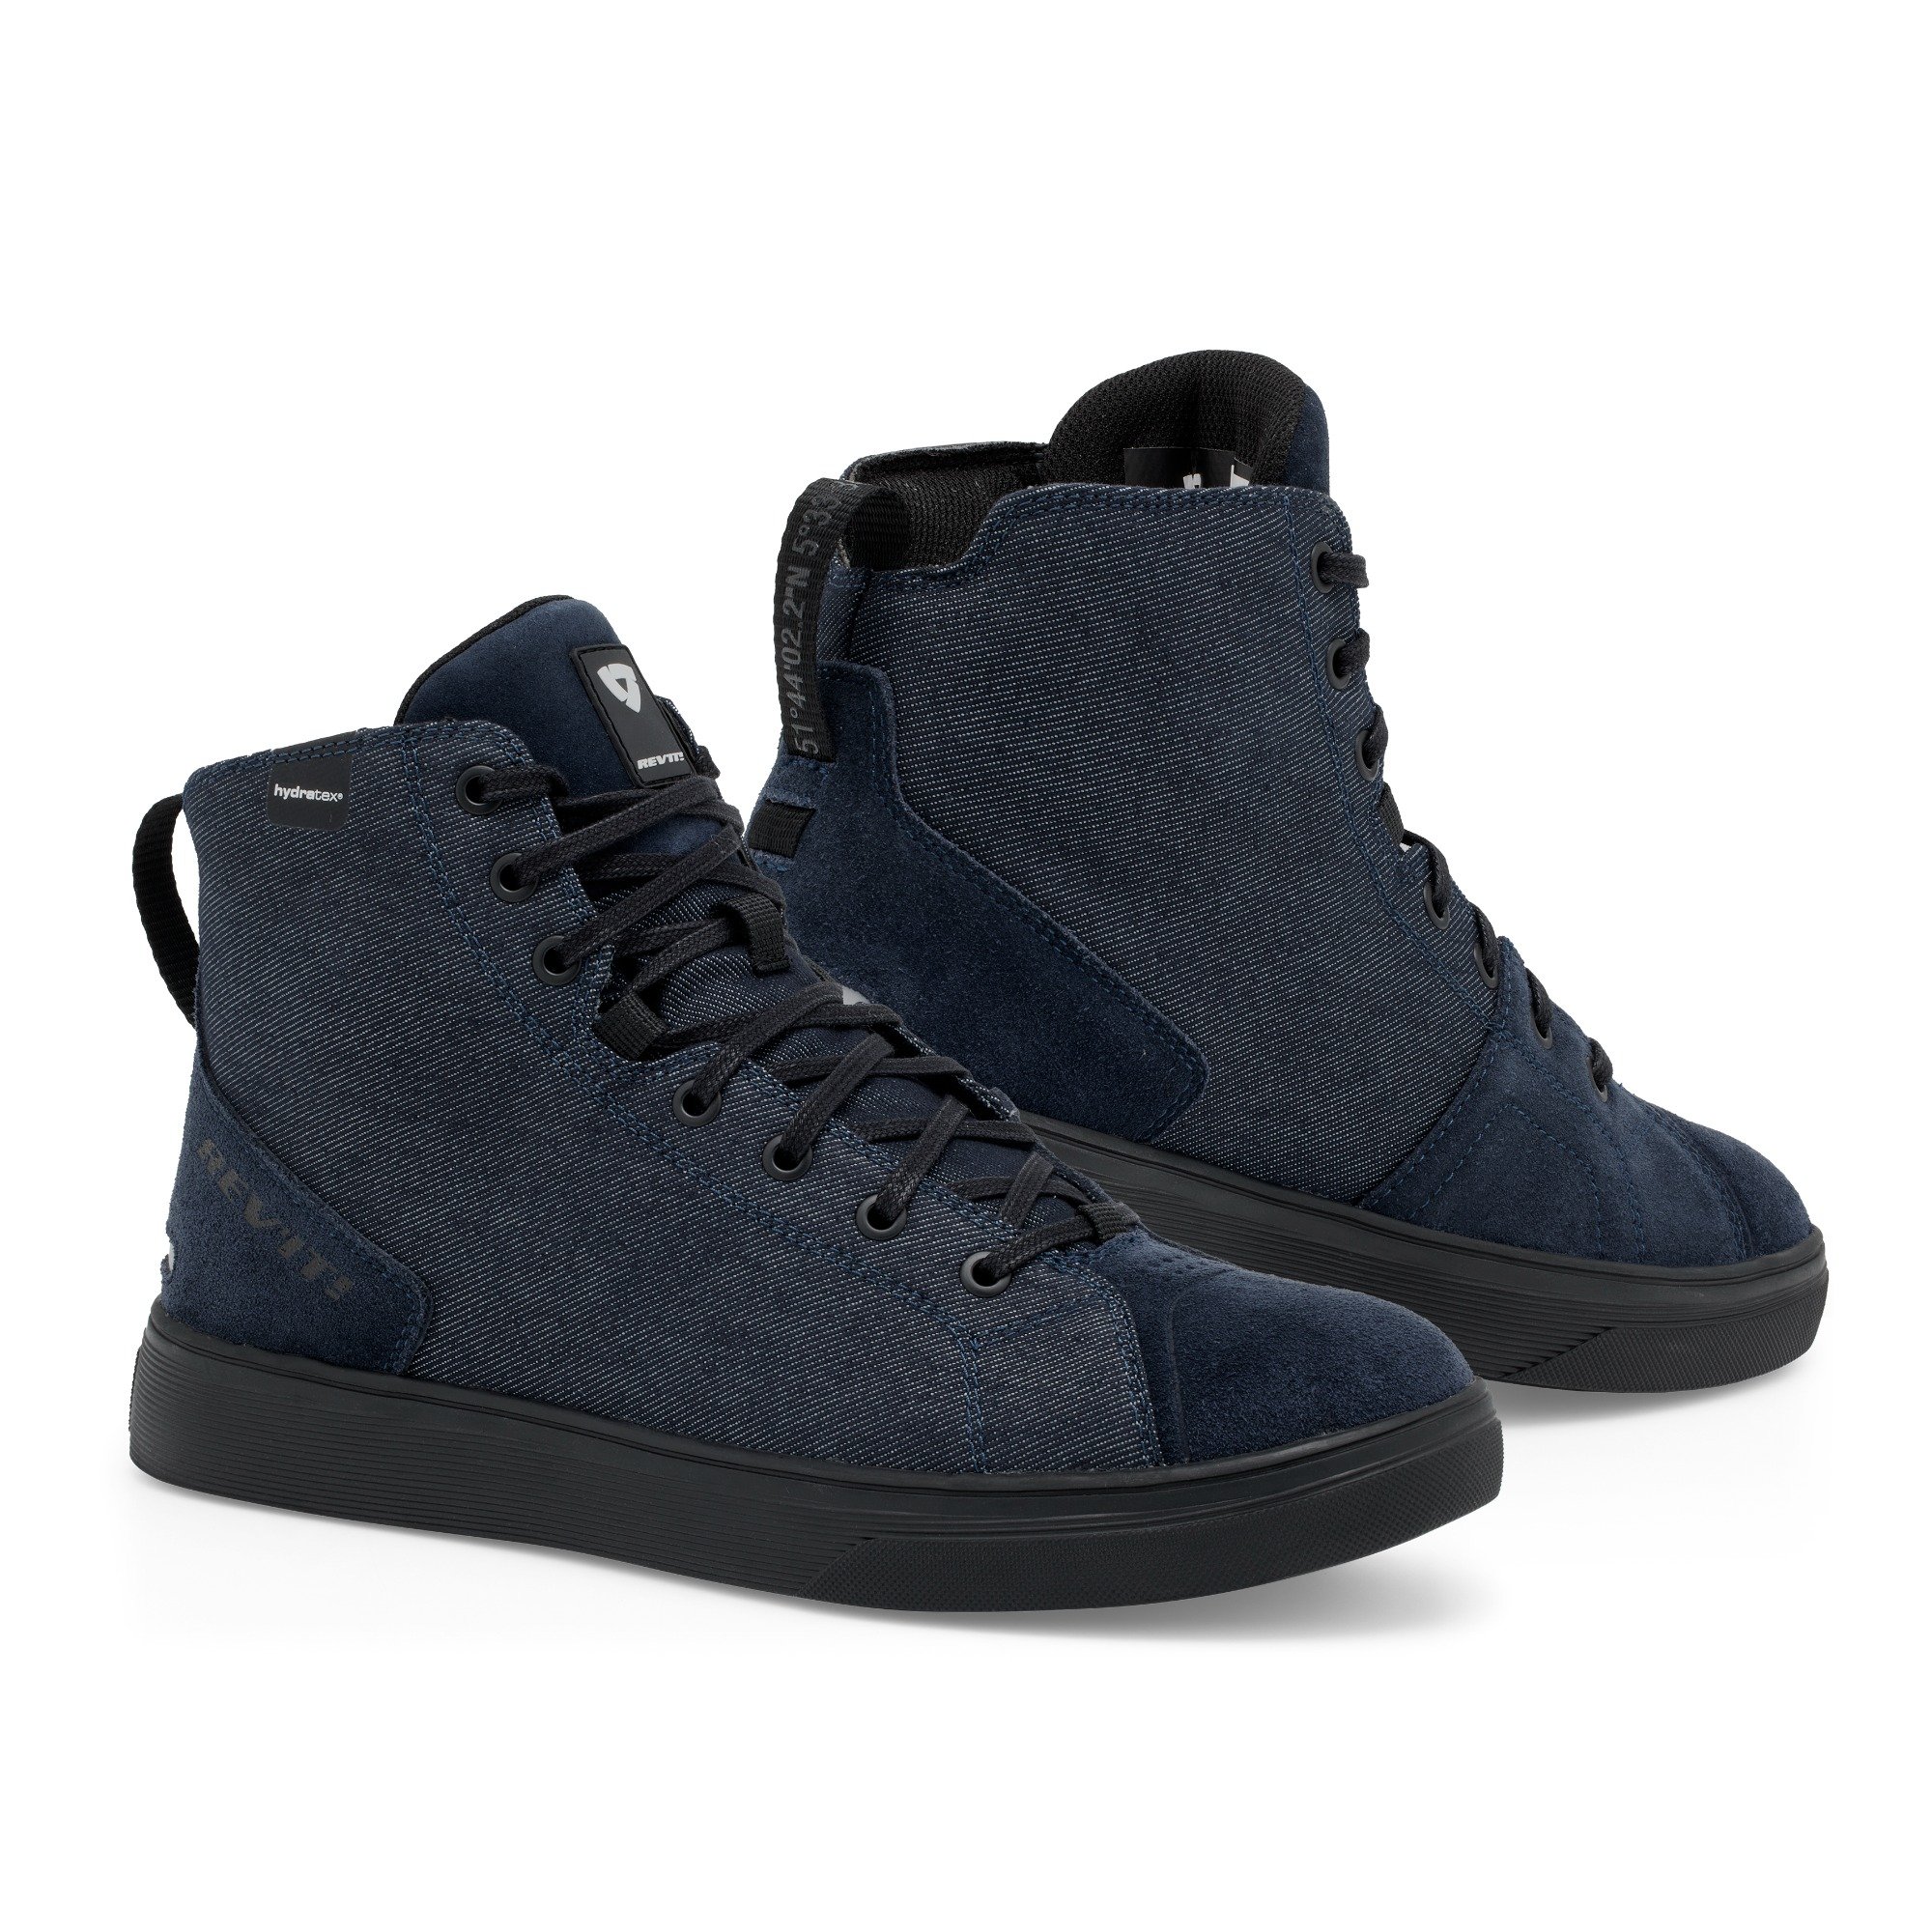 Image of REV'IT! Delta H2O Chaussures Foncé Bleu Noir Taille 42